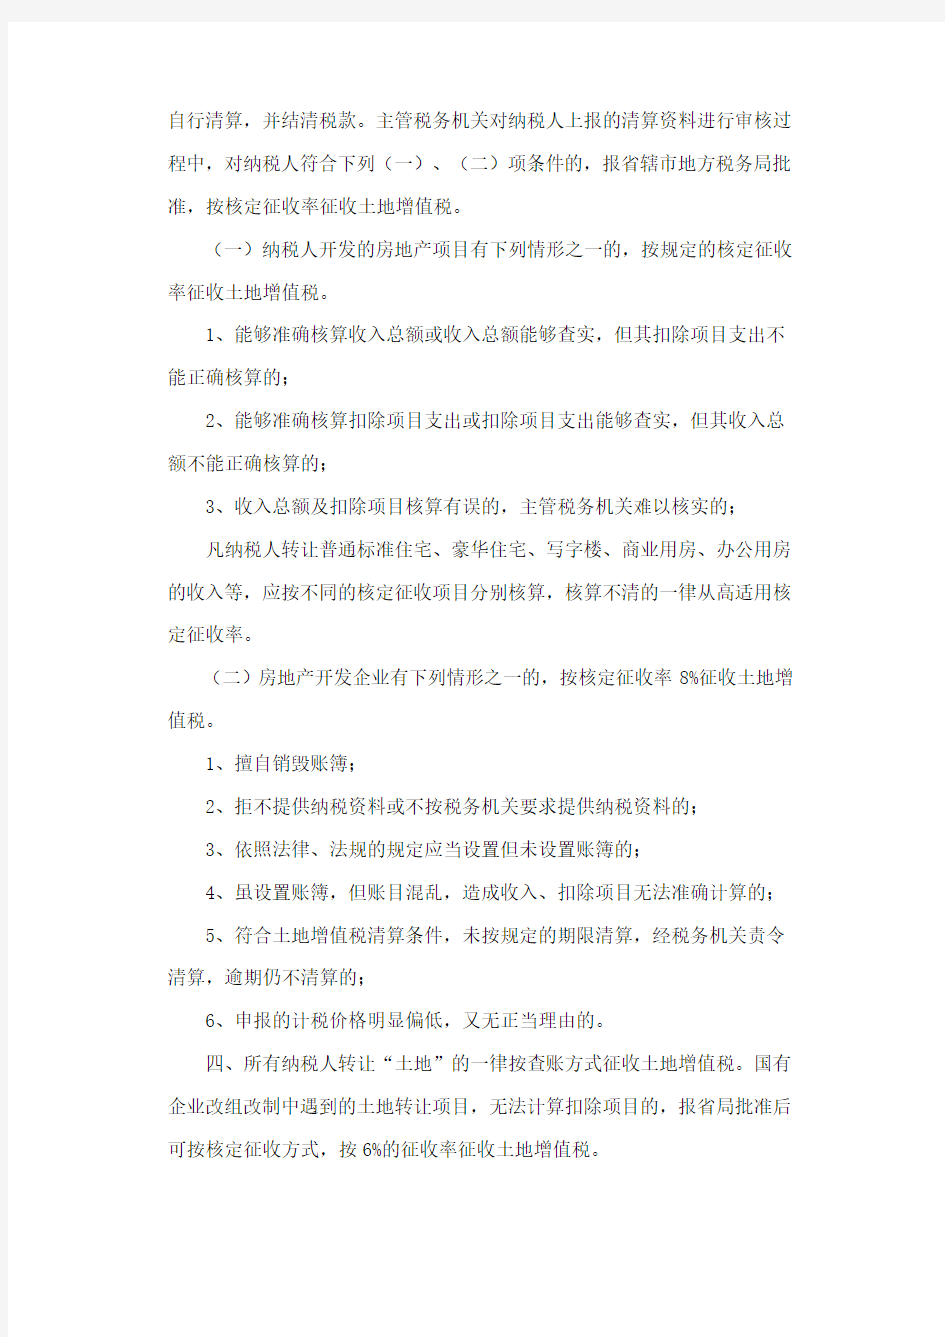 河南省地方税务局关于明确土地增值税若干政策的通知豫地税发〔2010〕28号